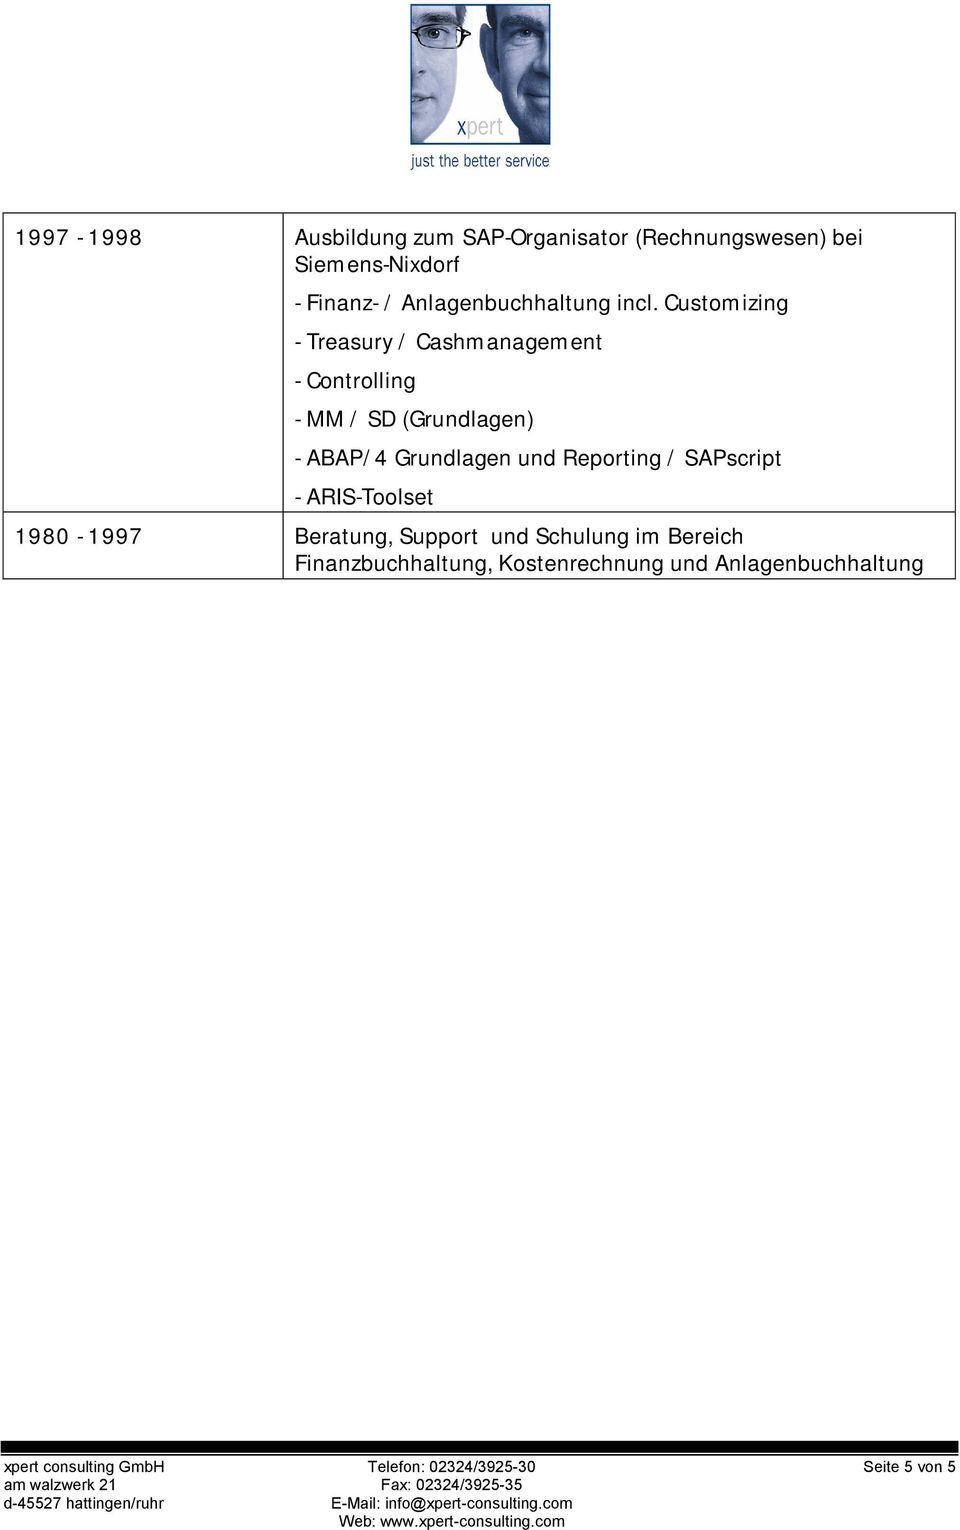 Customizing - Treasury / Cashmanagement - Controlling - MM / SD (Grundlagen) - ABAP/4 Grundlagen und